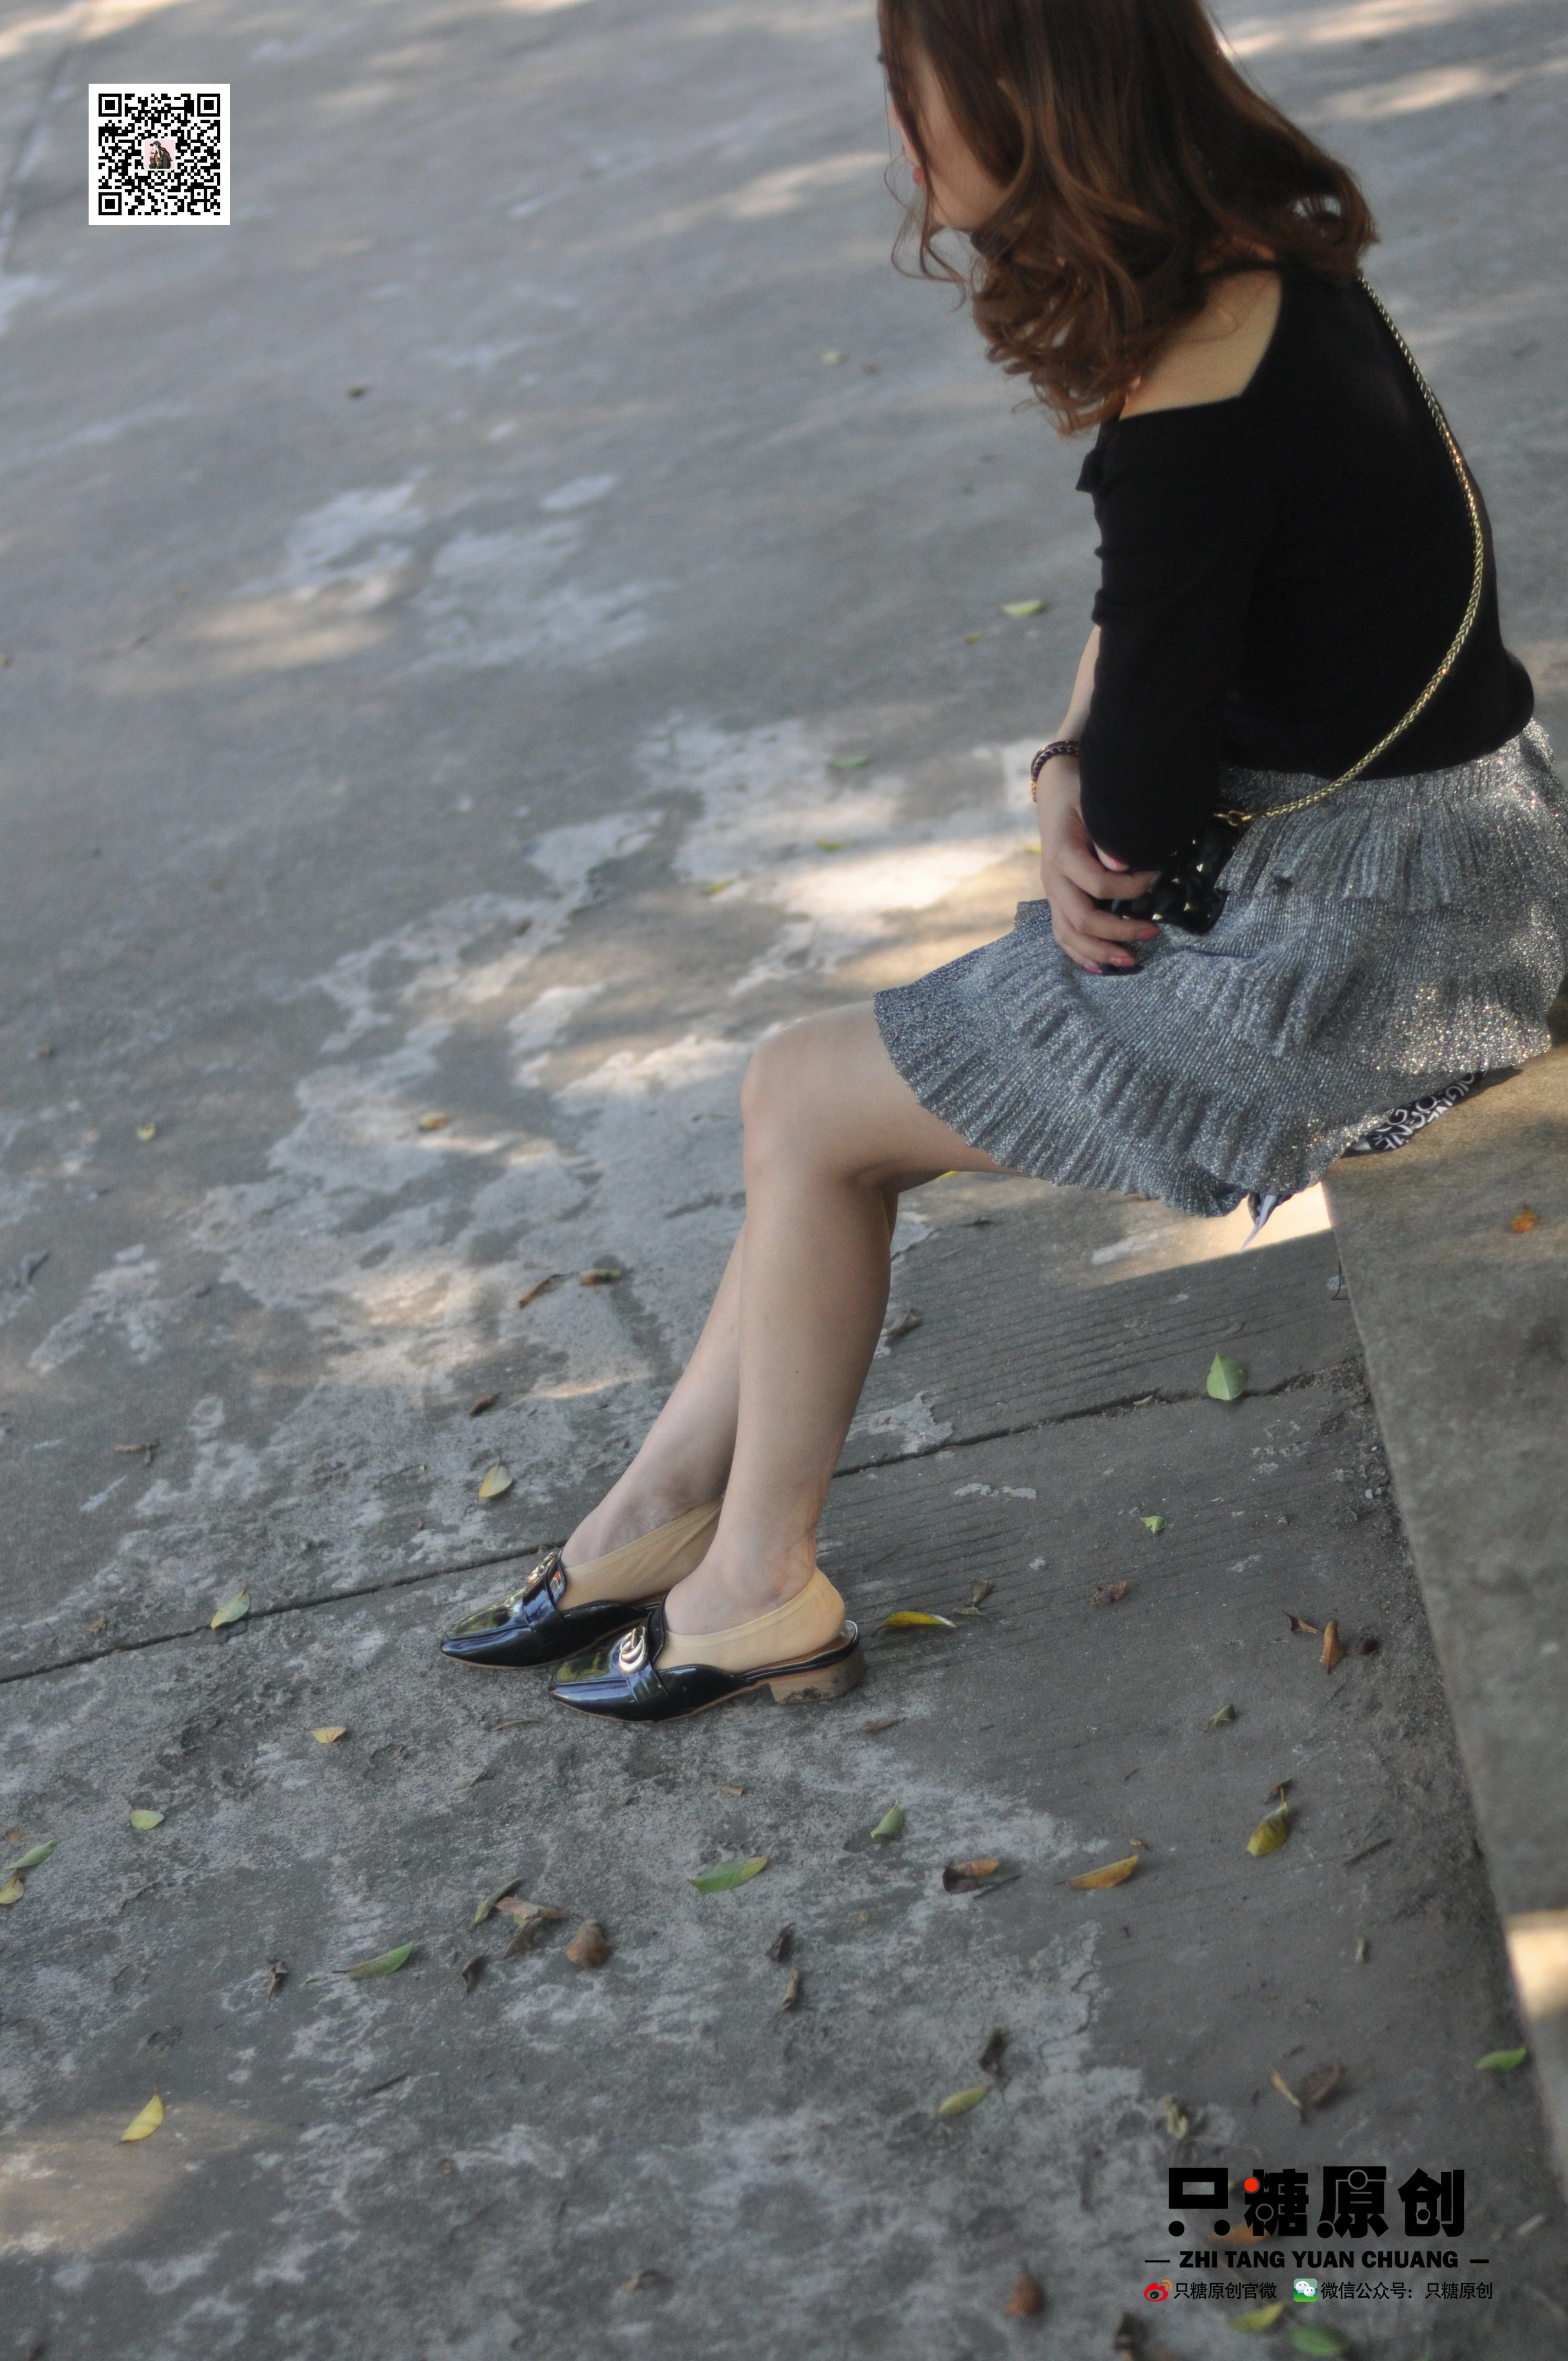 [只糖棉袜]NO.002 短裙与薄棉船袜 婷婷 美腿玉足公园街拍写真,